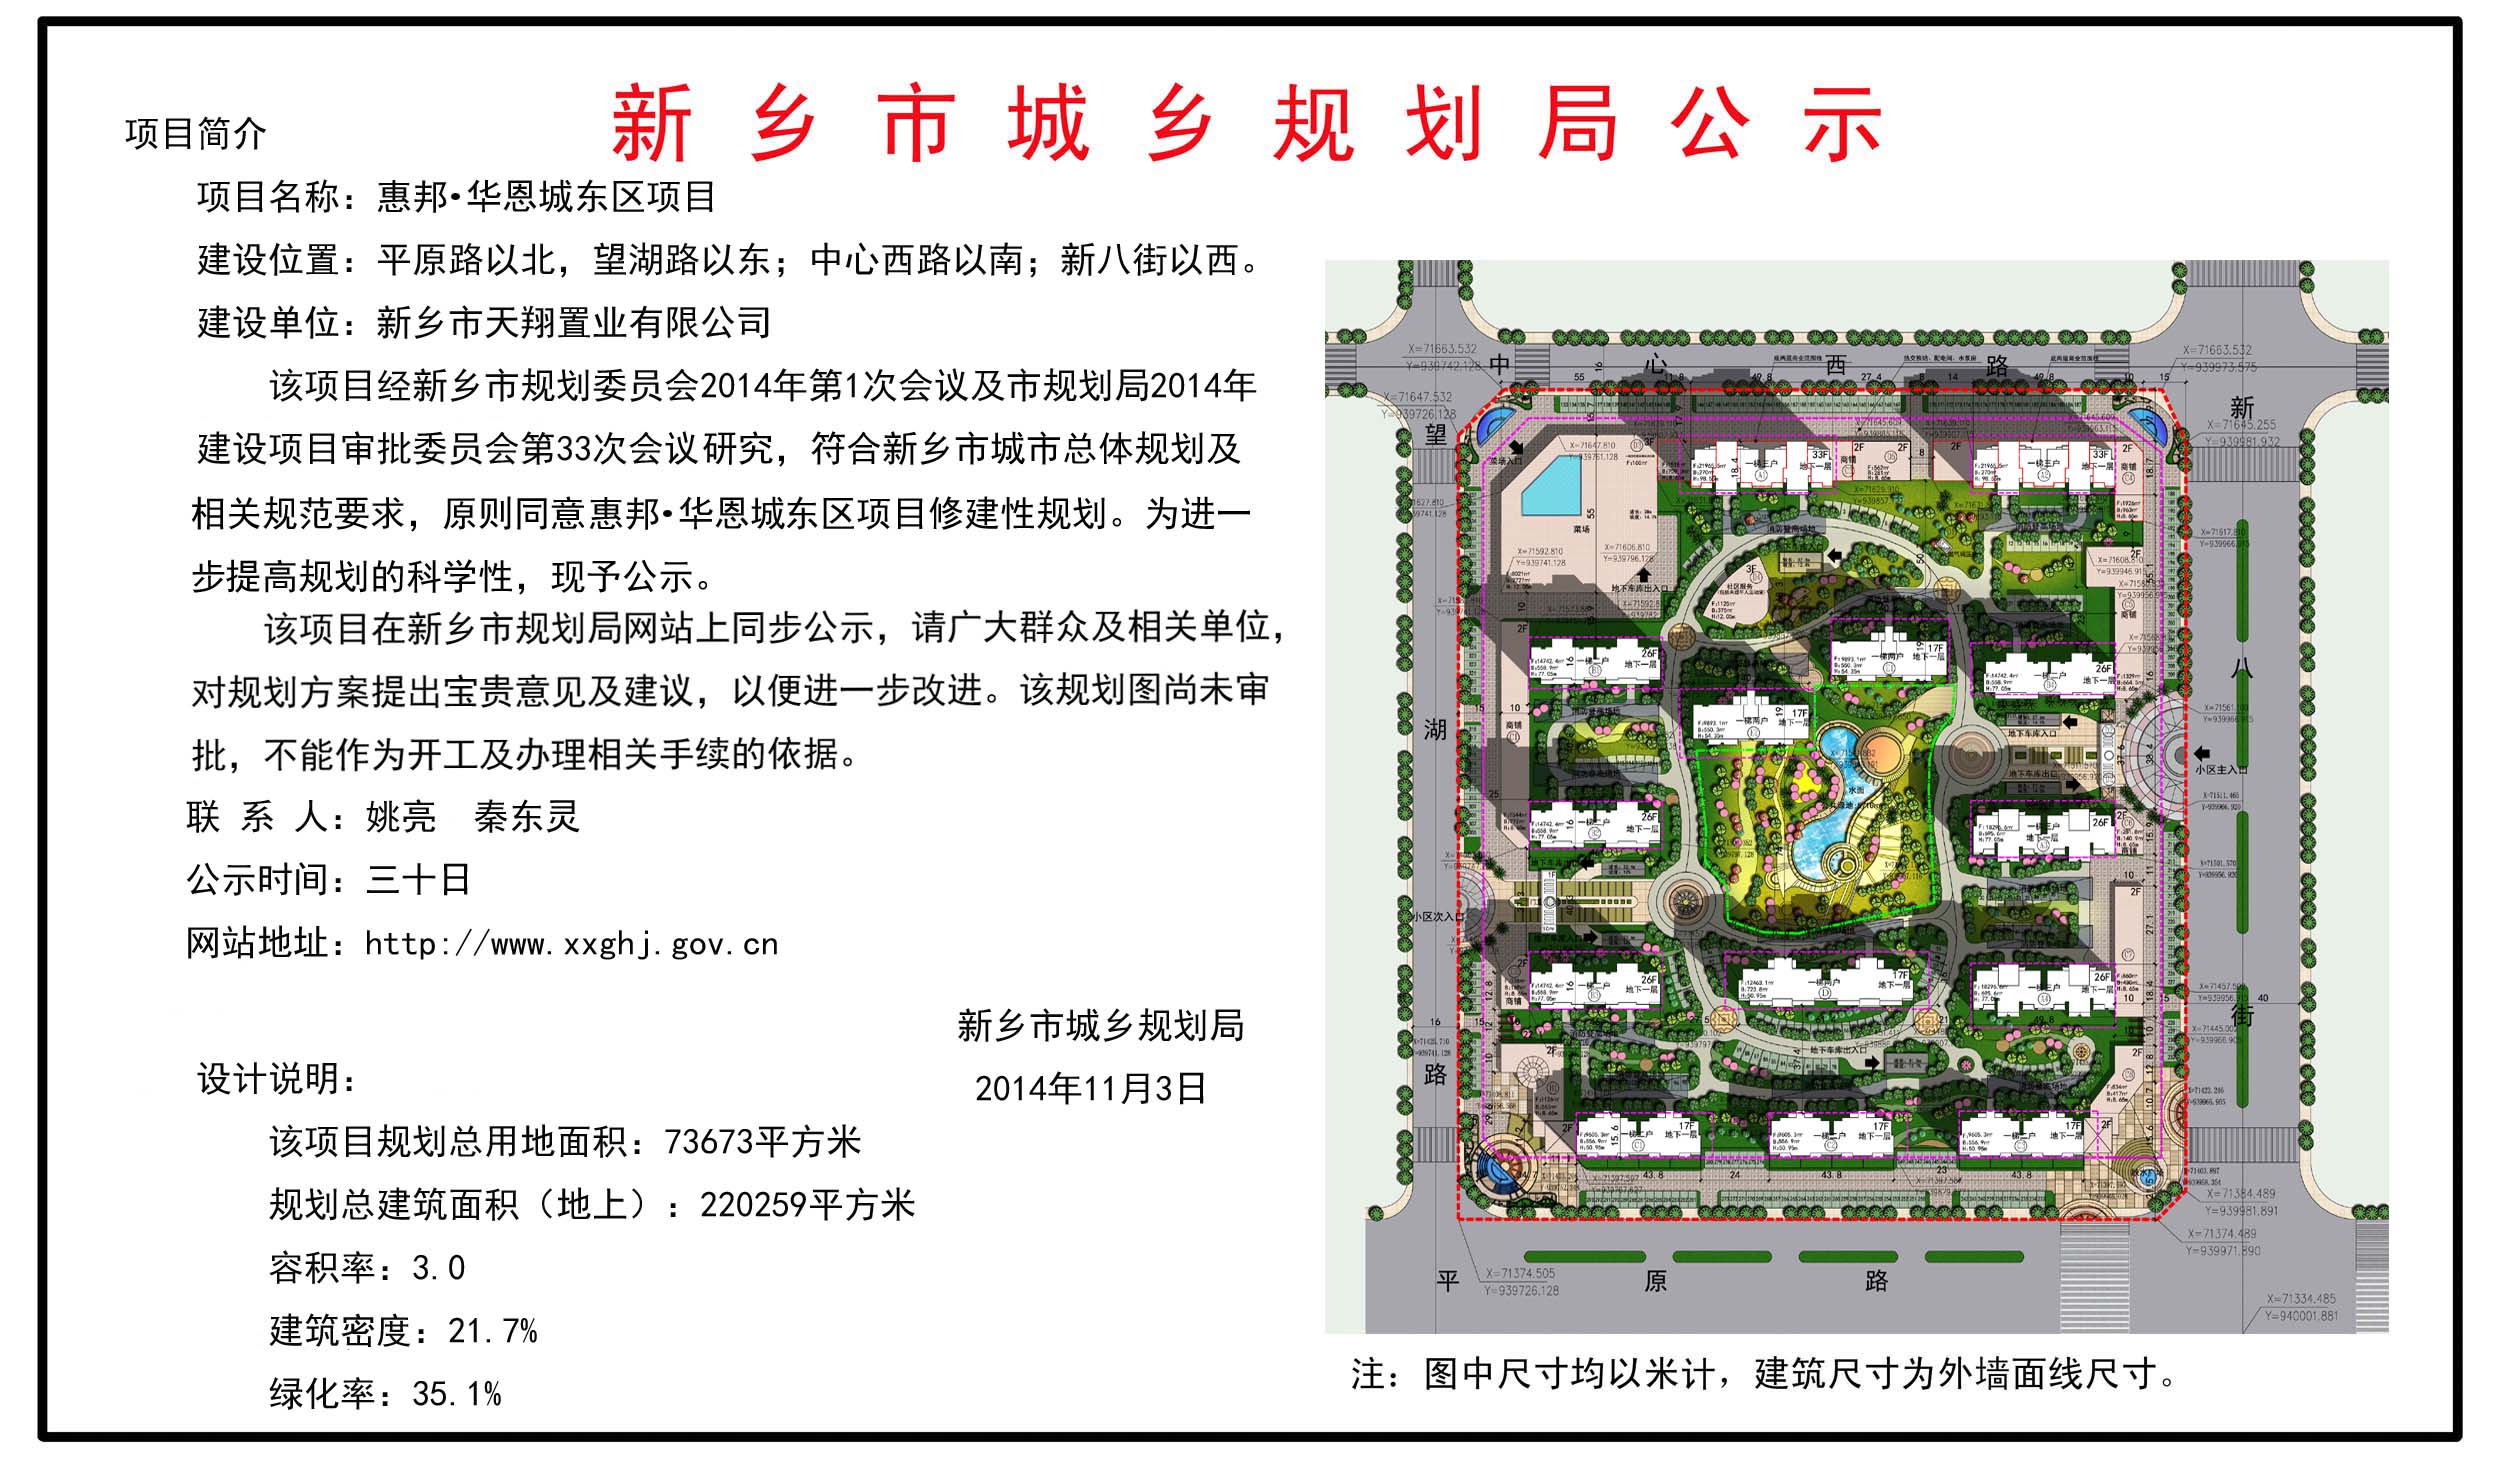 cn 新乡市城乡规划局 2014年11月3日 设计说明 该项目规划总用地面积